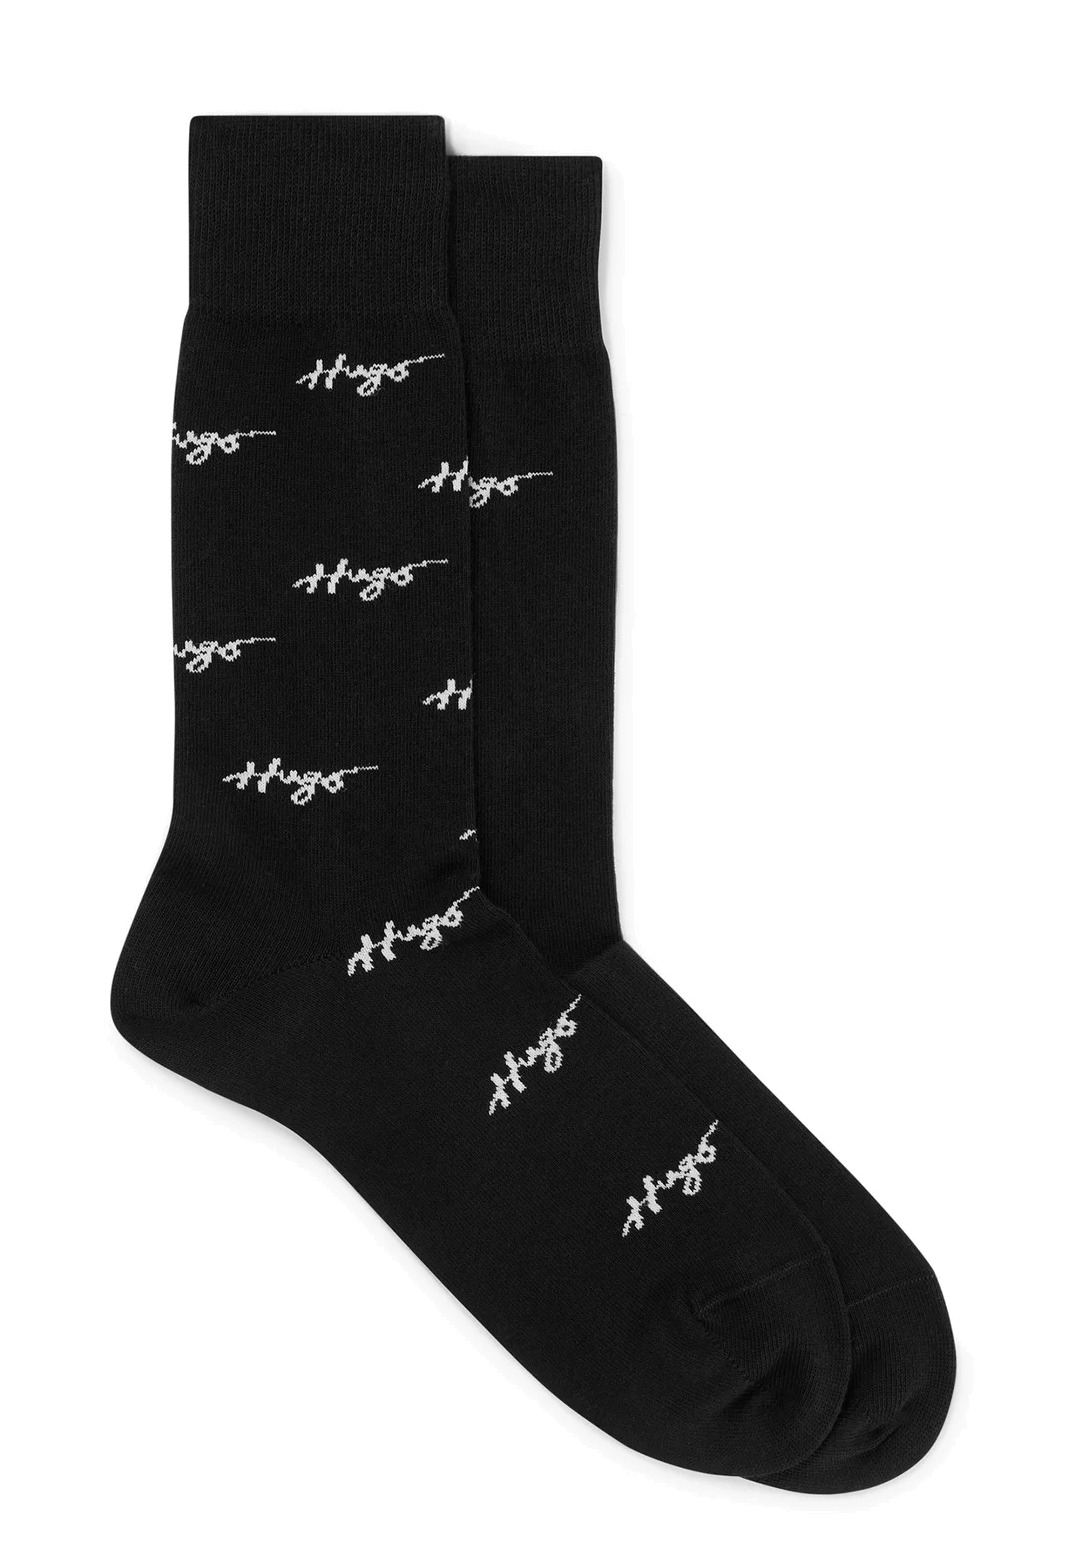 Hugo Boss 2 PACK - pánské ponožky HUGO 50491194-001 43-46